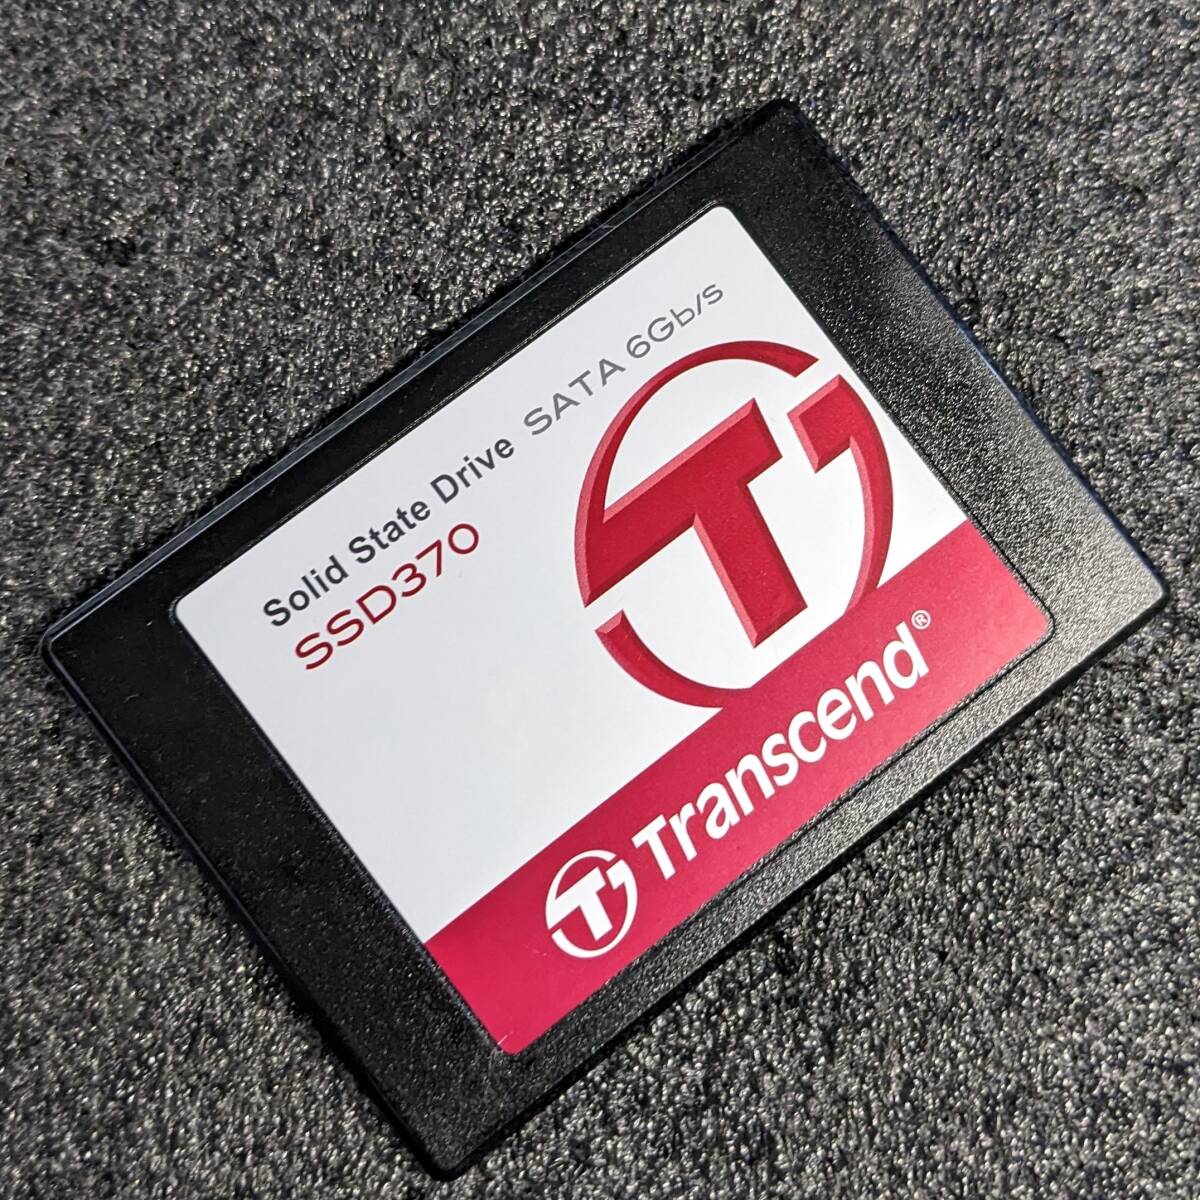 【中古】Ttranscend SSD370 64GB TS64GSSD370 [2.5インチ SATA3 7mm厚 MLC 健康状態99%]